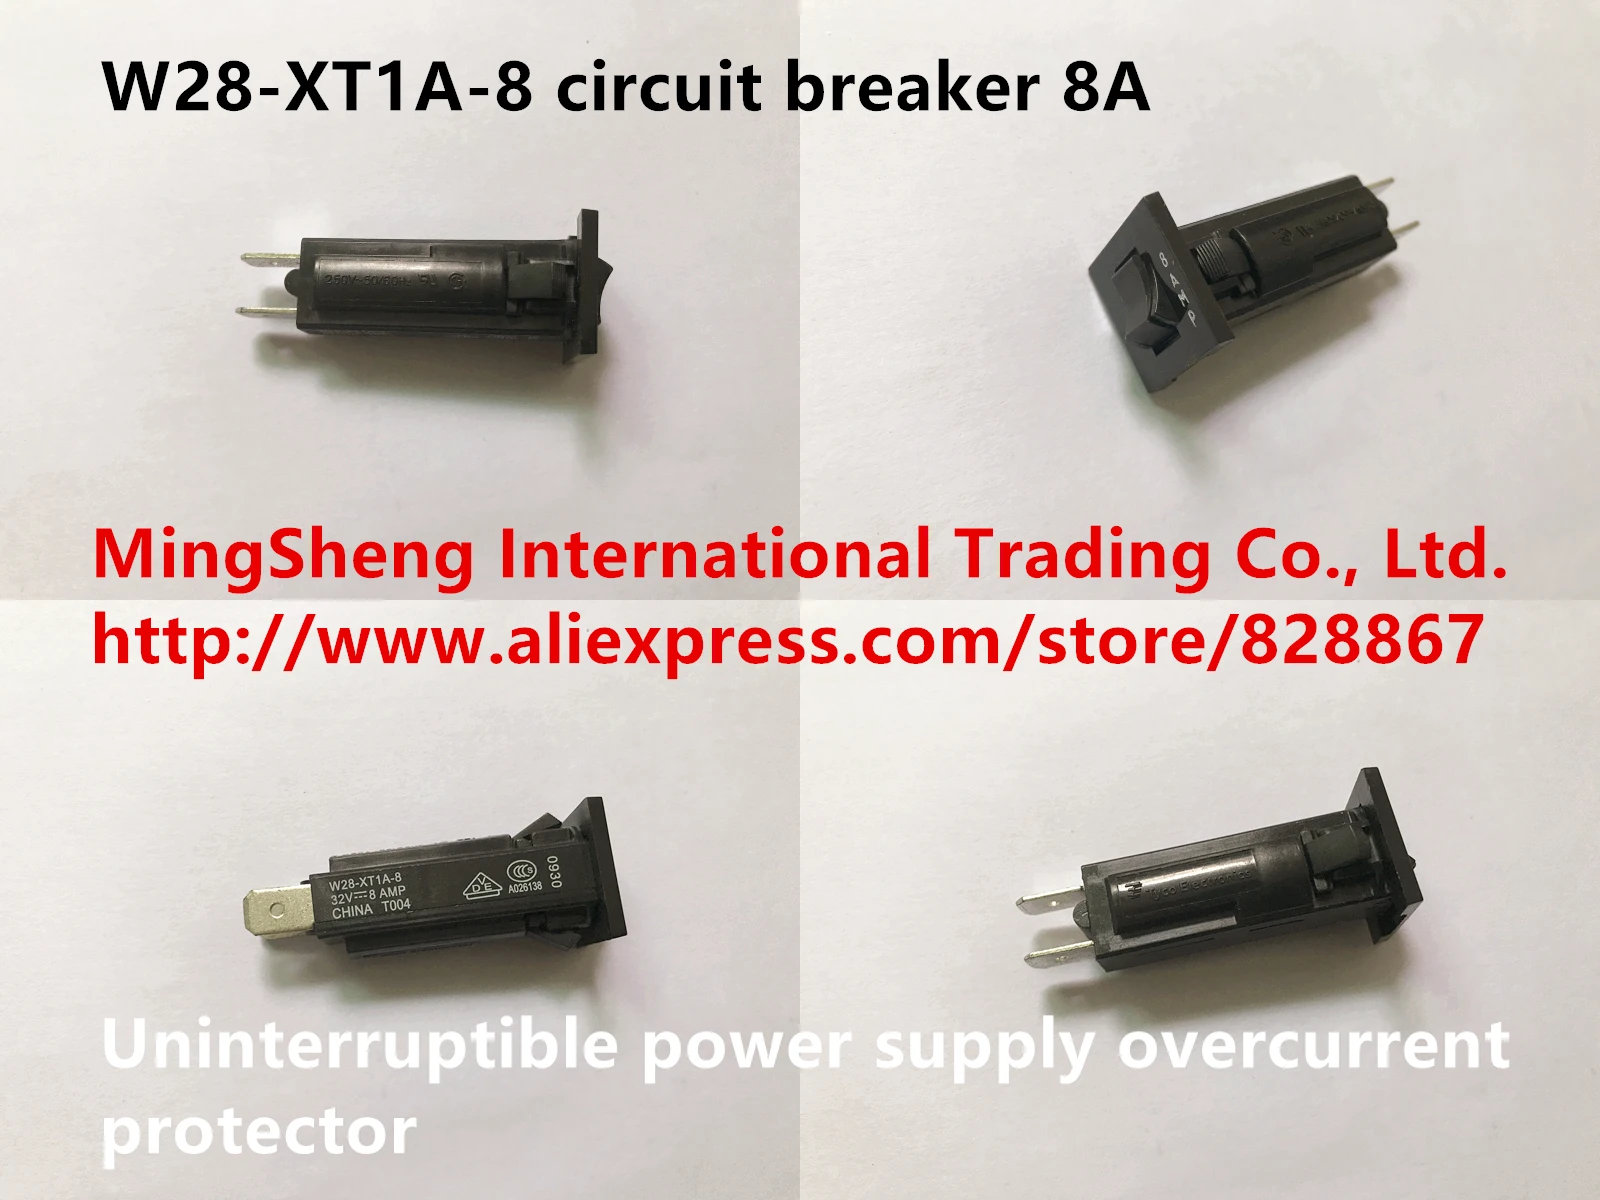 Nuevo Original W28-XT1A-8 interruptor de circuito 8A sistema de alimentación ininterrumpida protector de sobrecorriente 0